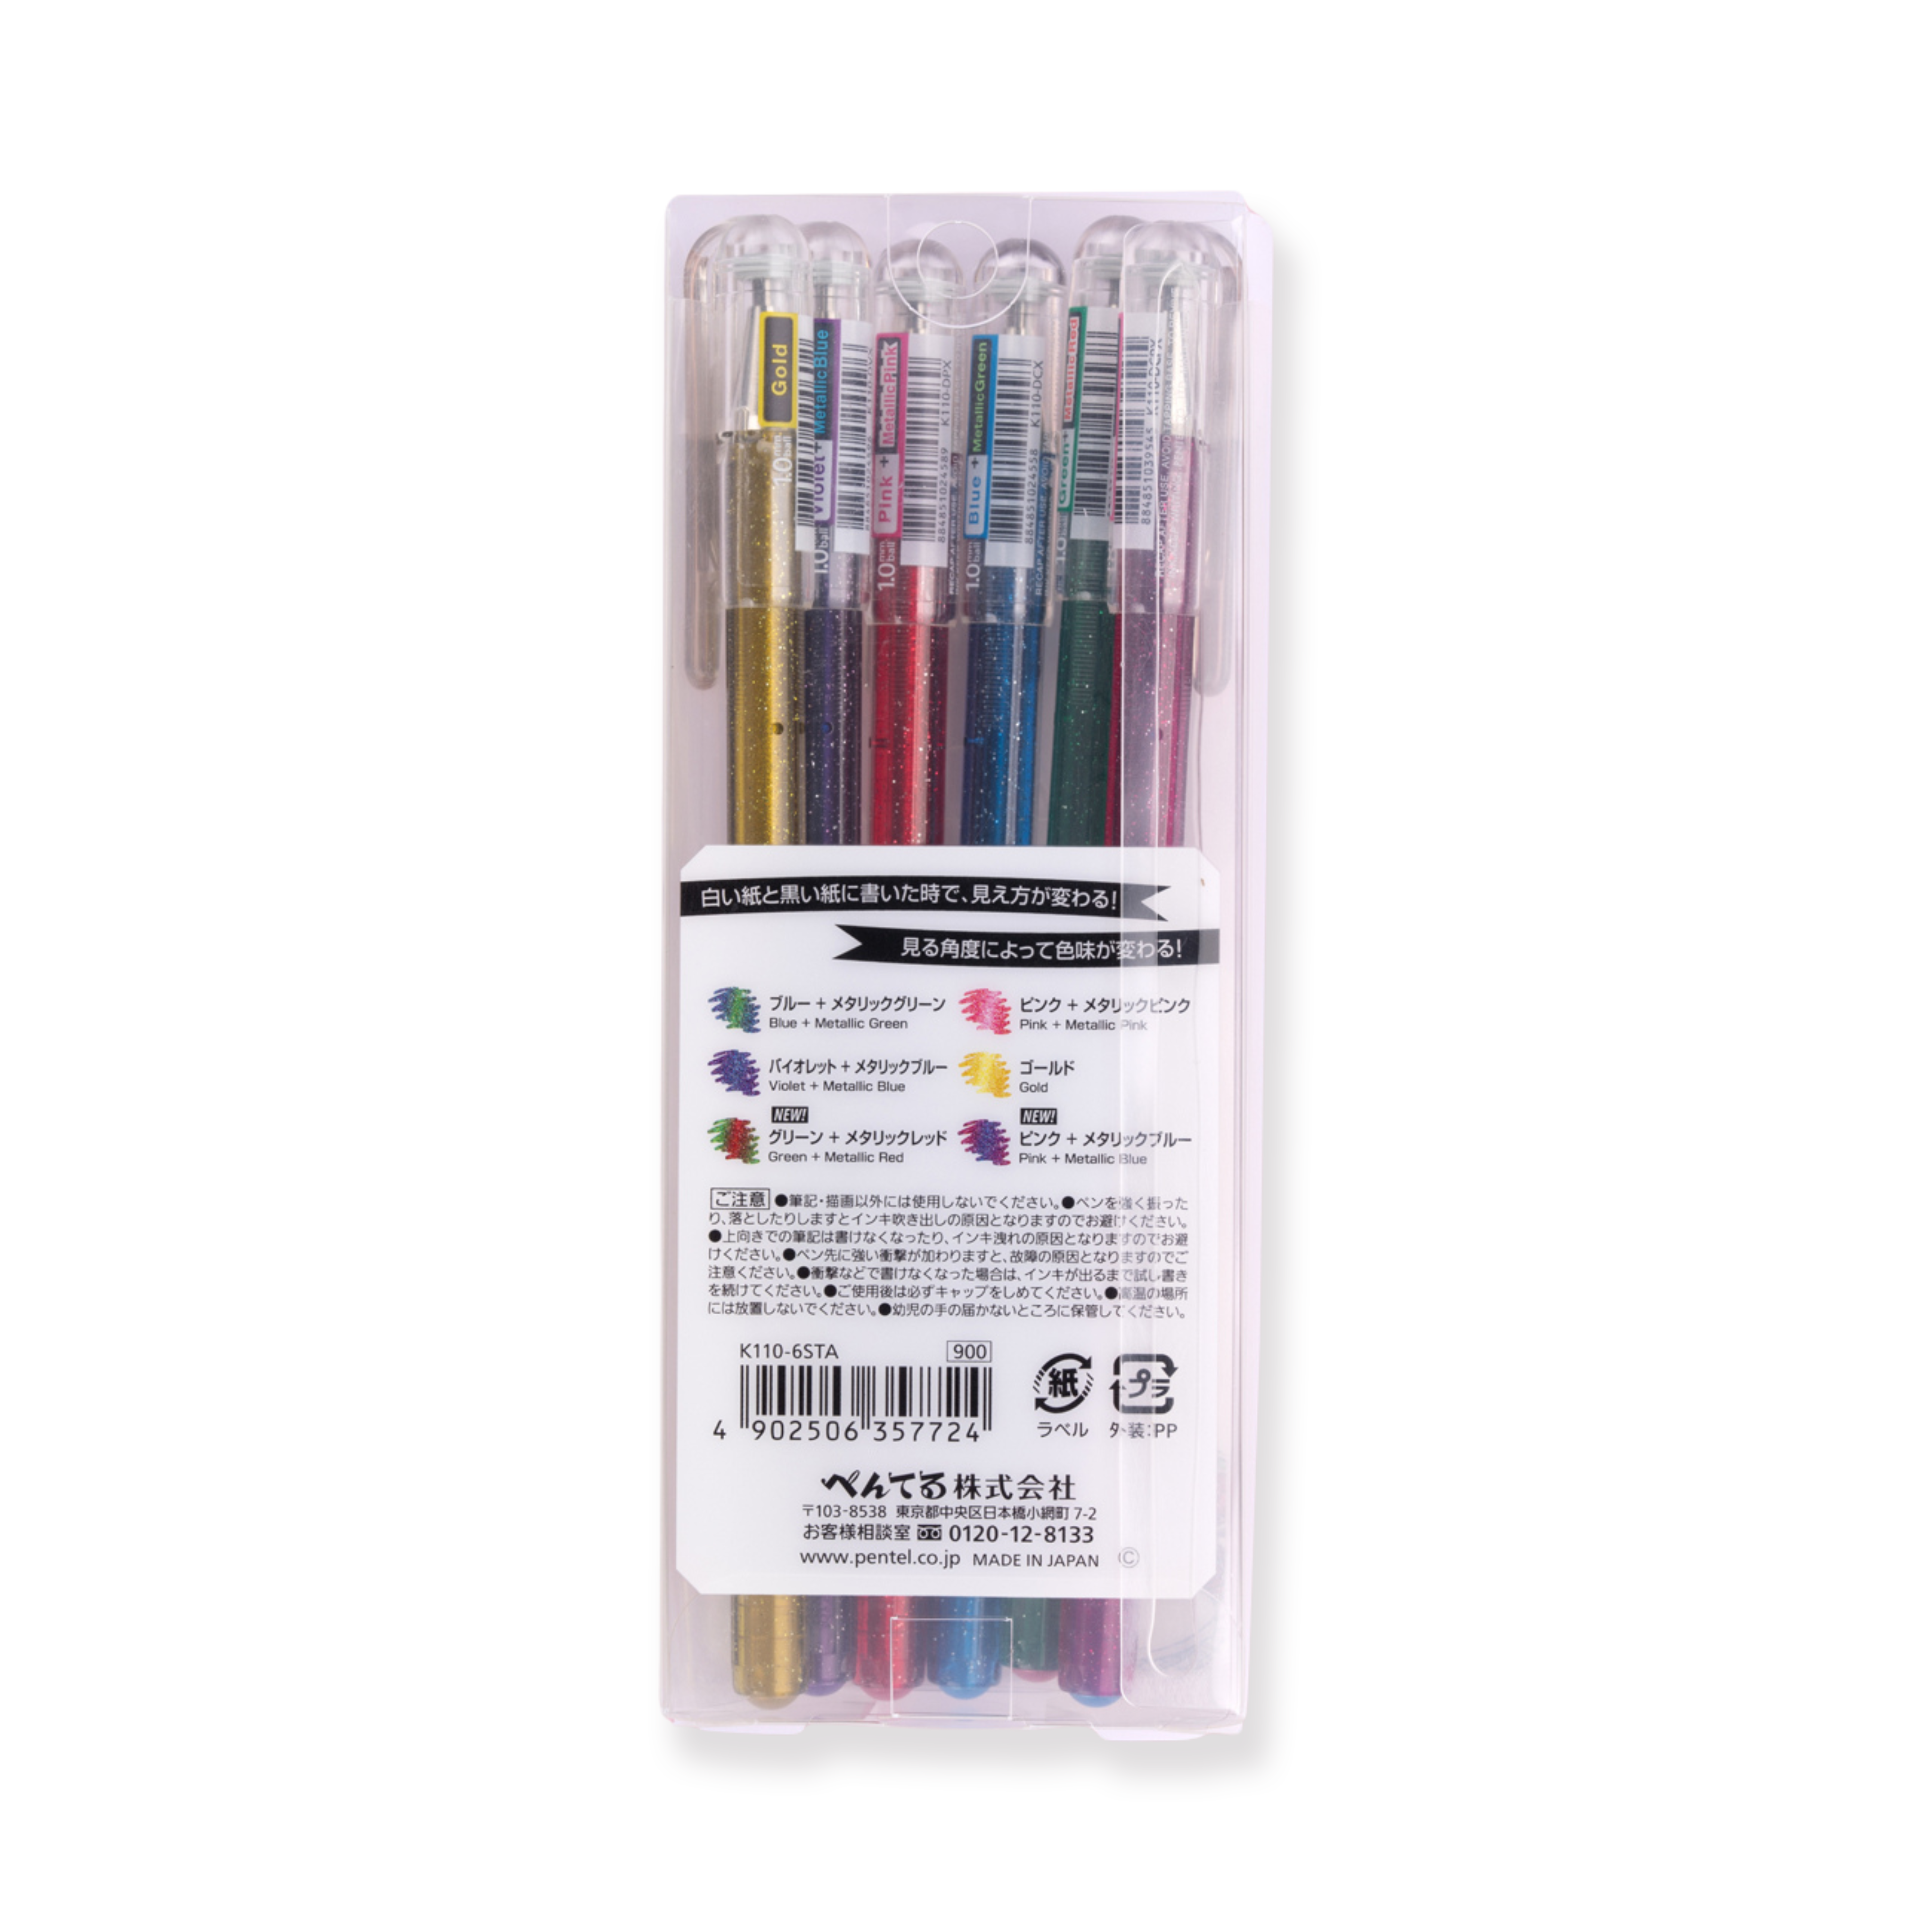 Pentel Hybrid Dual Metallic Gelstift 1,0 mm – 6-Farben-Set, glitzernd auf weißem Papier